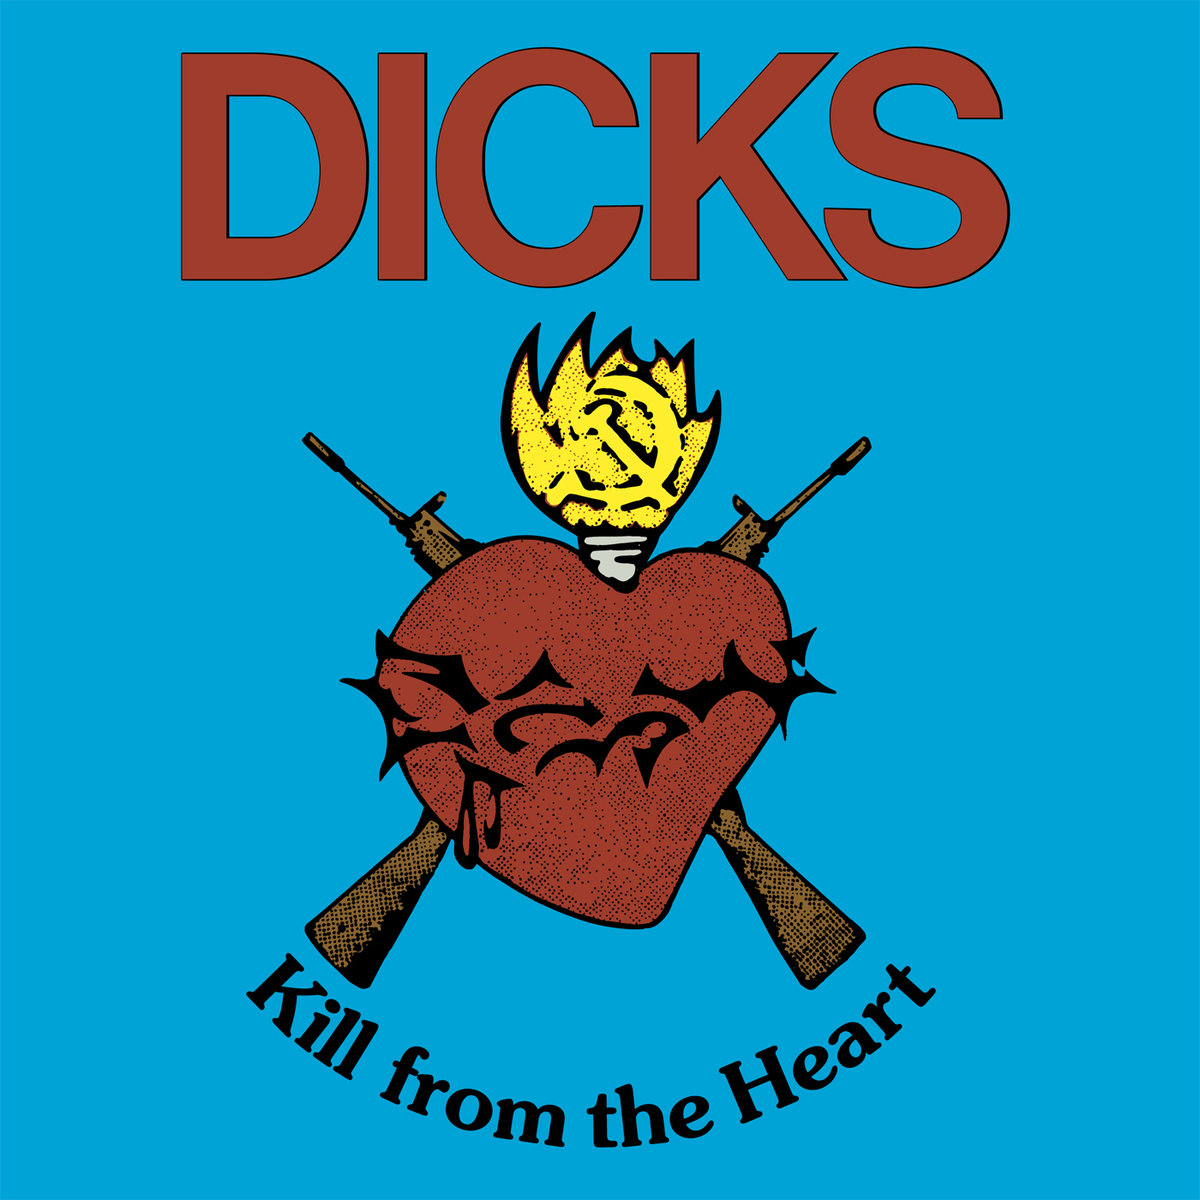 The Dicks Kill From the Heart